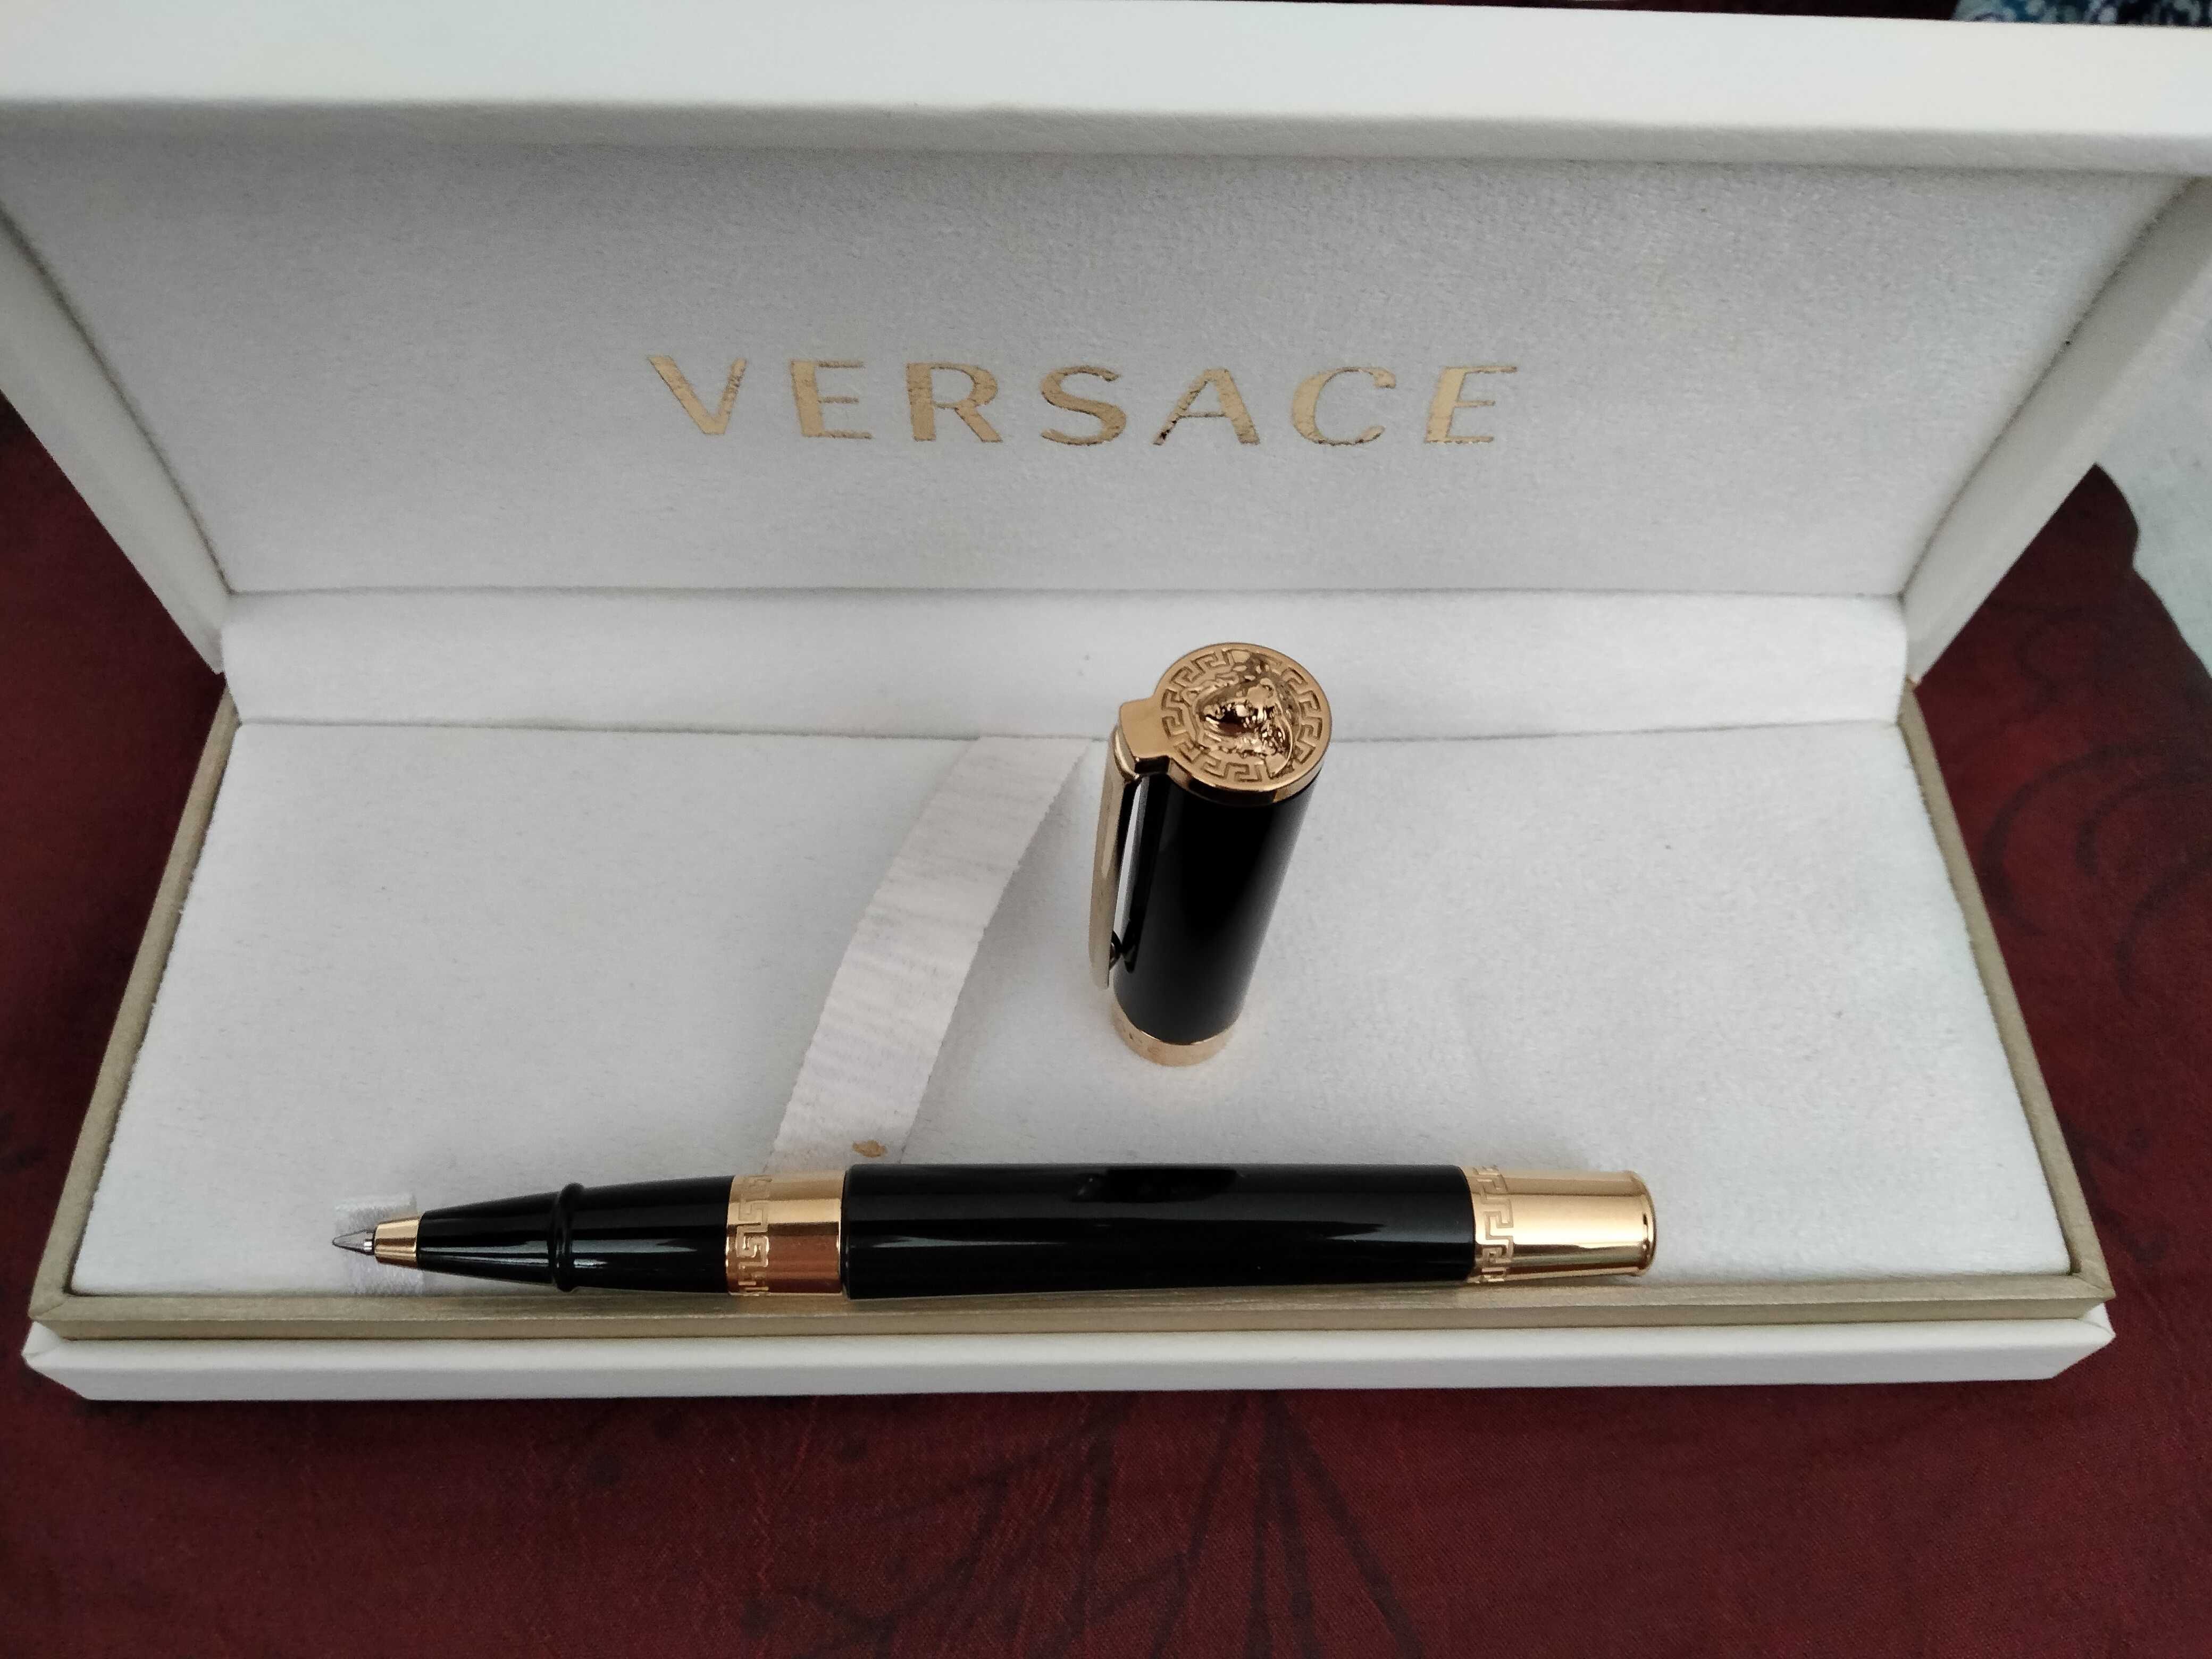 Versace - caneta Rollerball com certificado de garantia